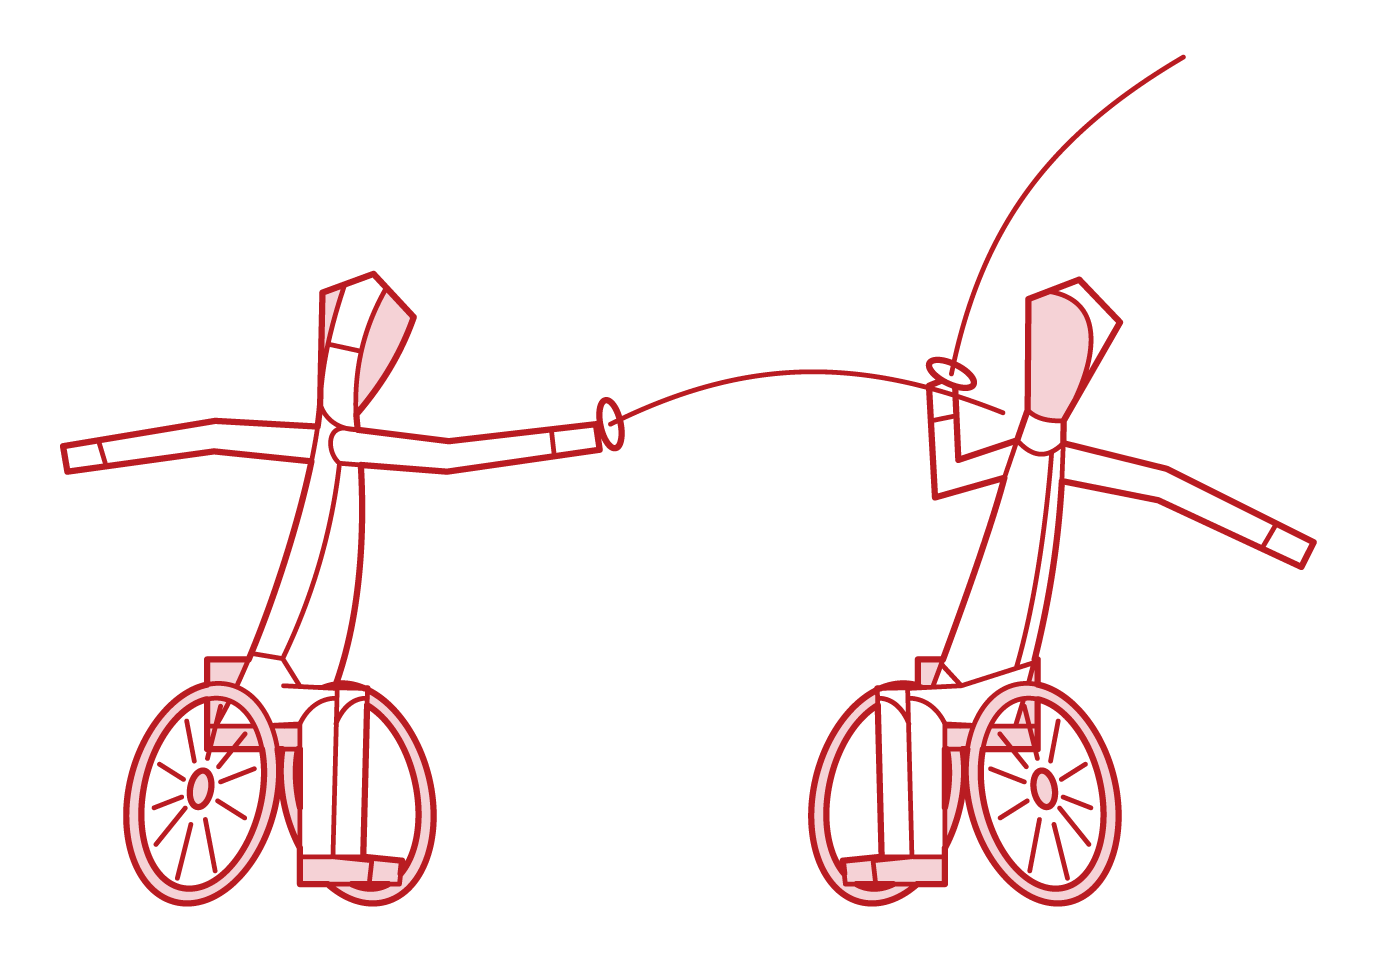 게임을 하는 휠체어 펜싱 플레이어의 그림